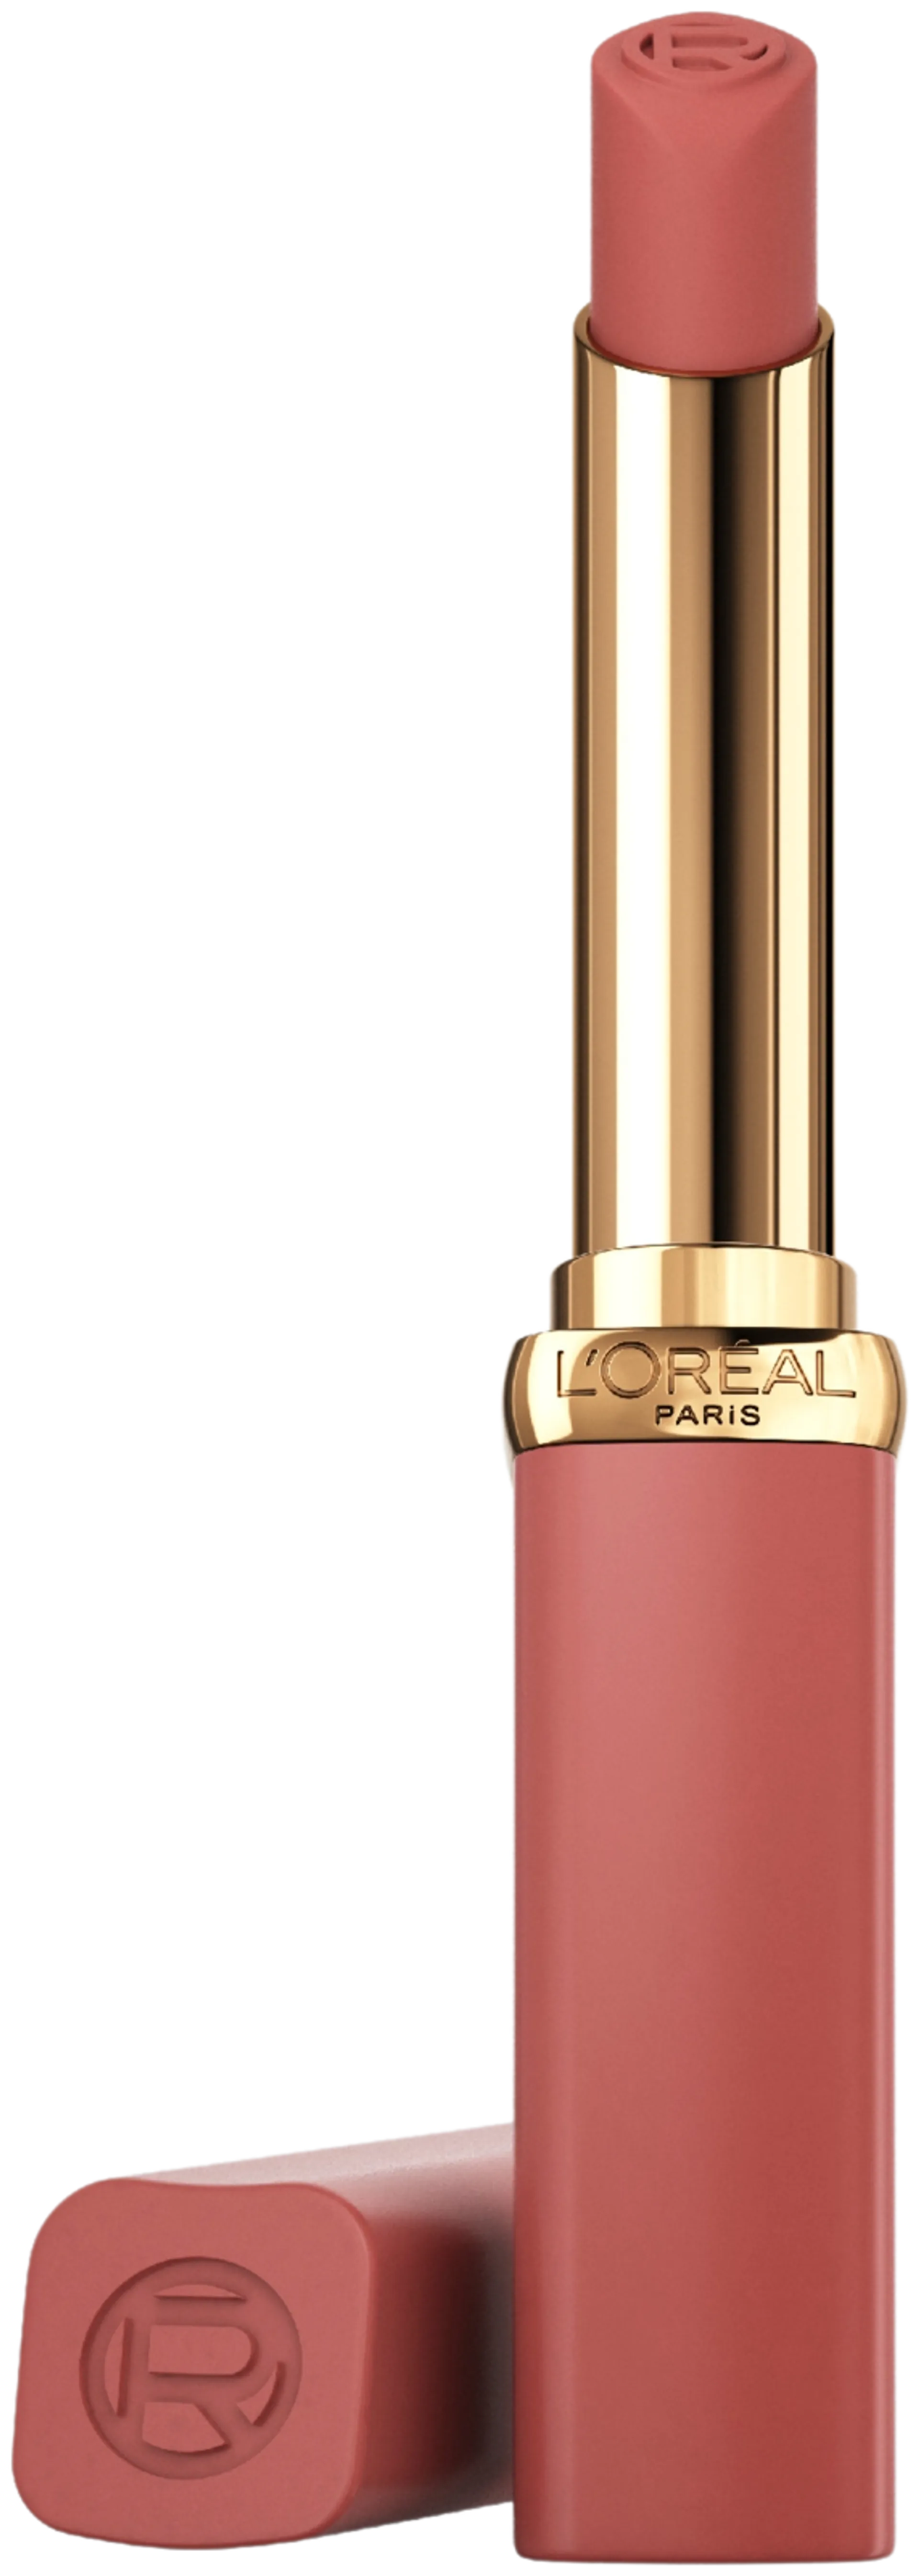 L'Oréal Paris Color Riche 600 NUDE AUDACIOUS LE NUDE AUDACIOUS Huulipuna 1,8g - 600 NUDE AUDACIOUS - 2